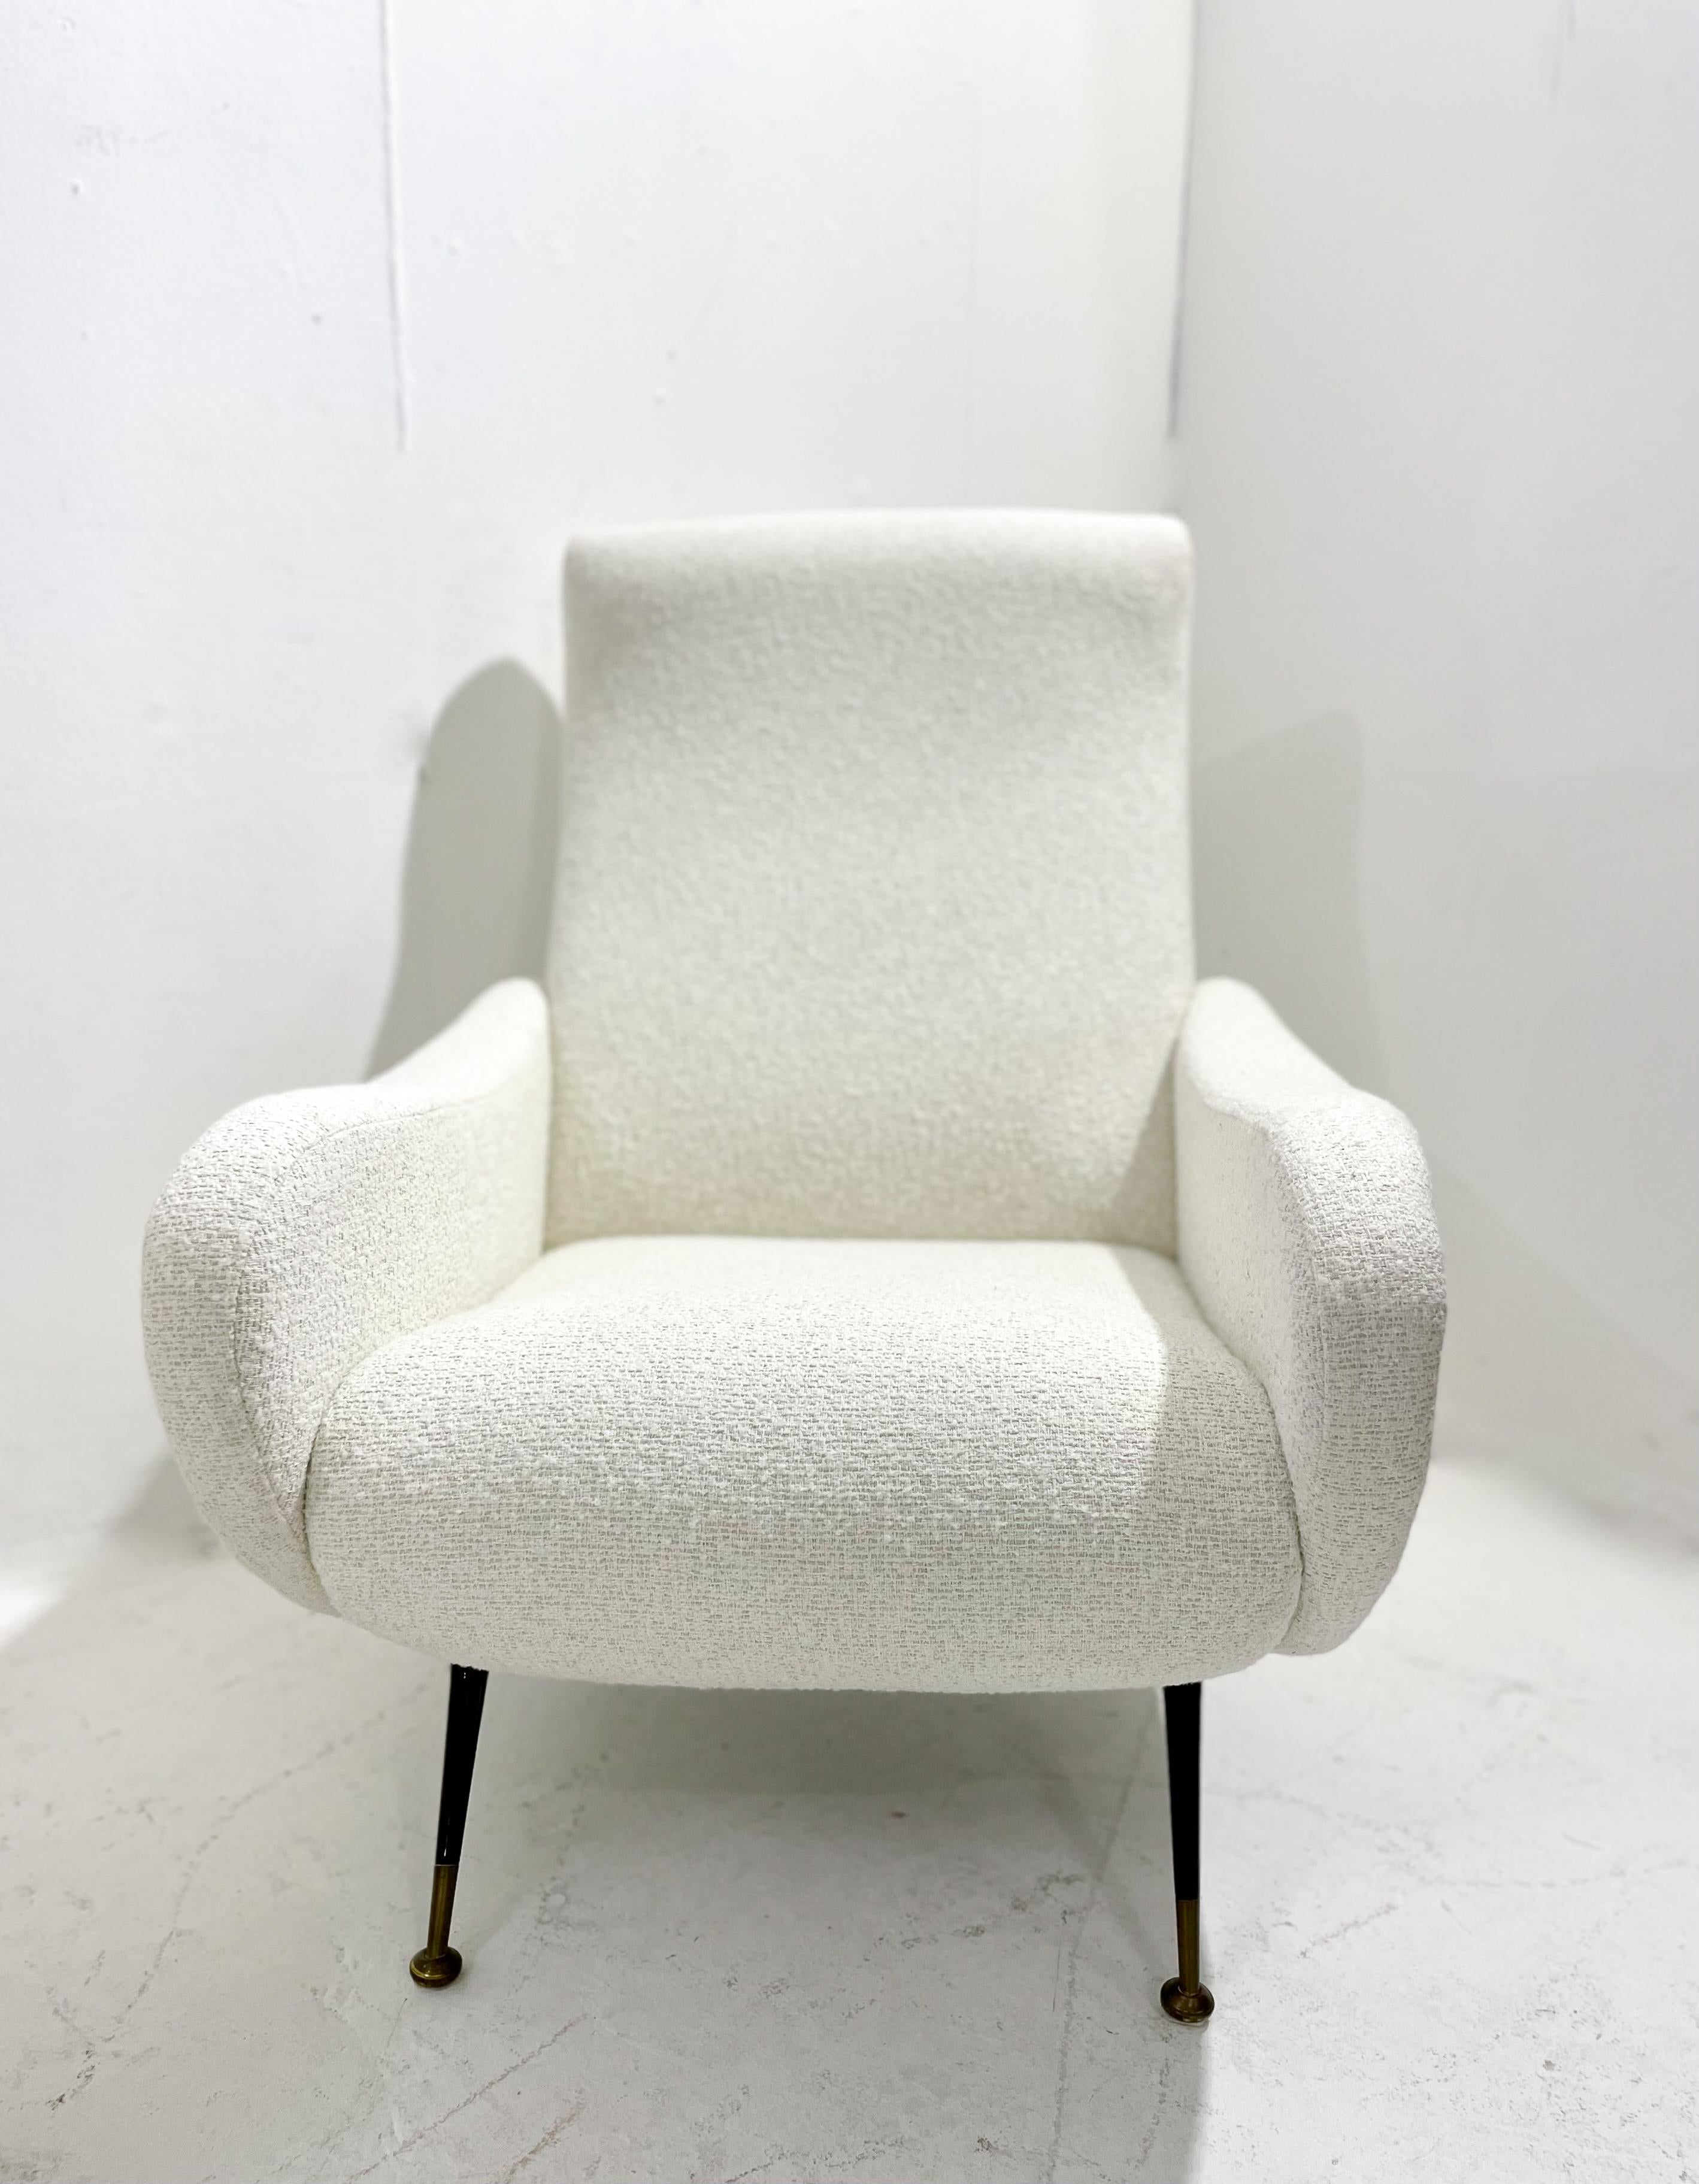 Pareja de sillones italianos modernos de mediados de siglo, tela blanca, años 50.
Tapicería nueva.